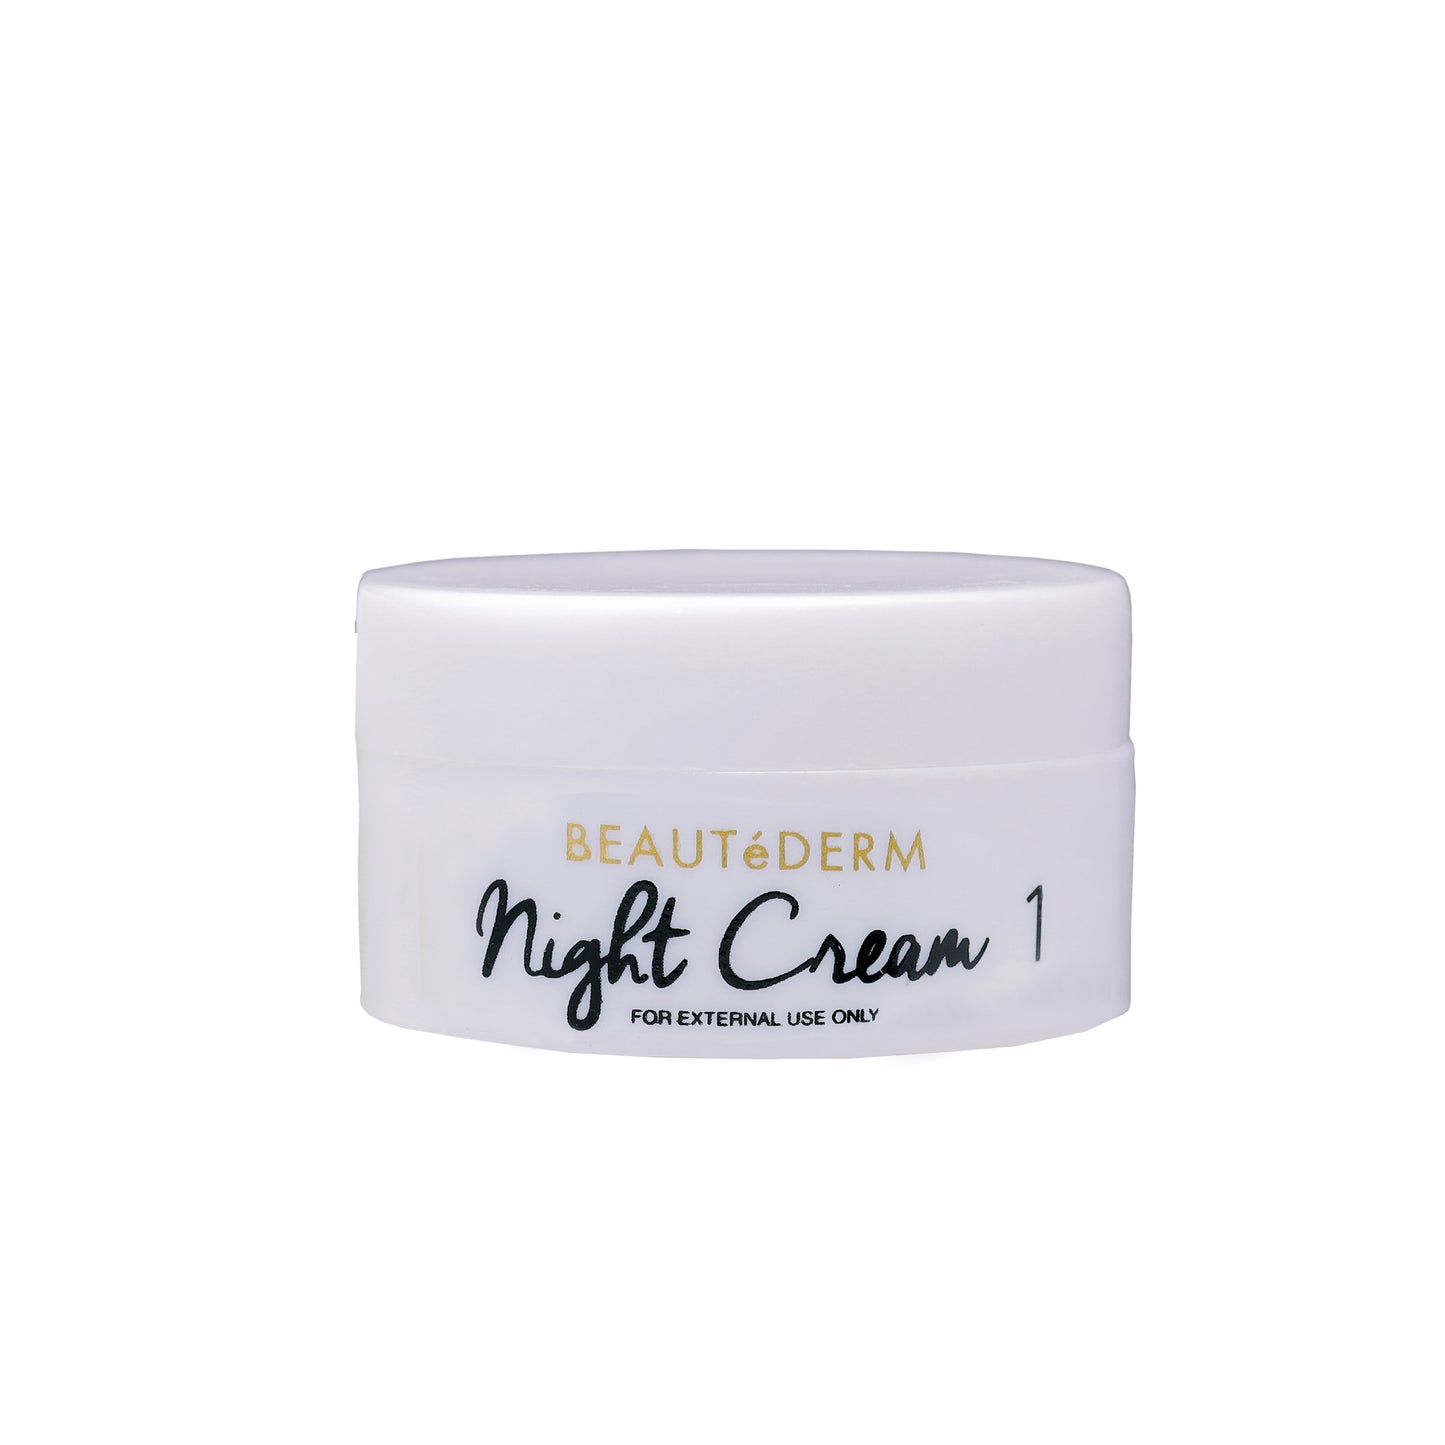 Beautederm Night Cream 1 10g Whitening